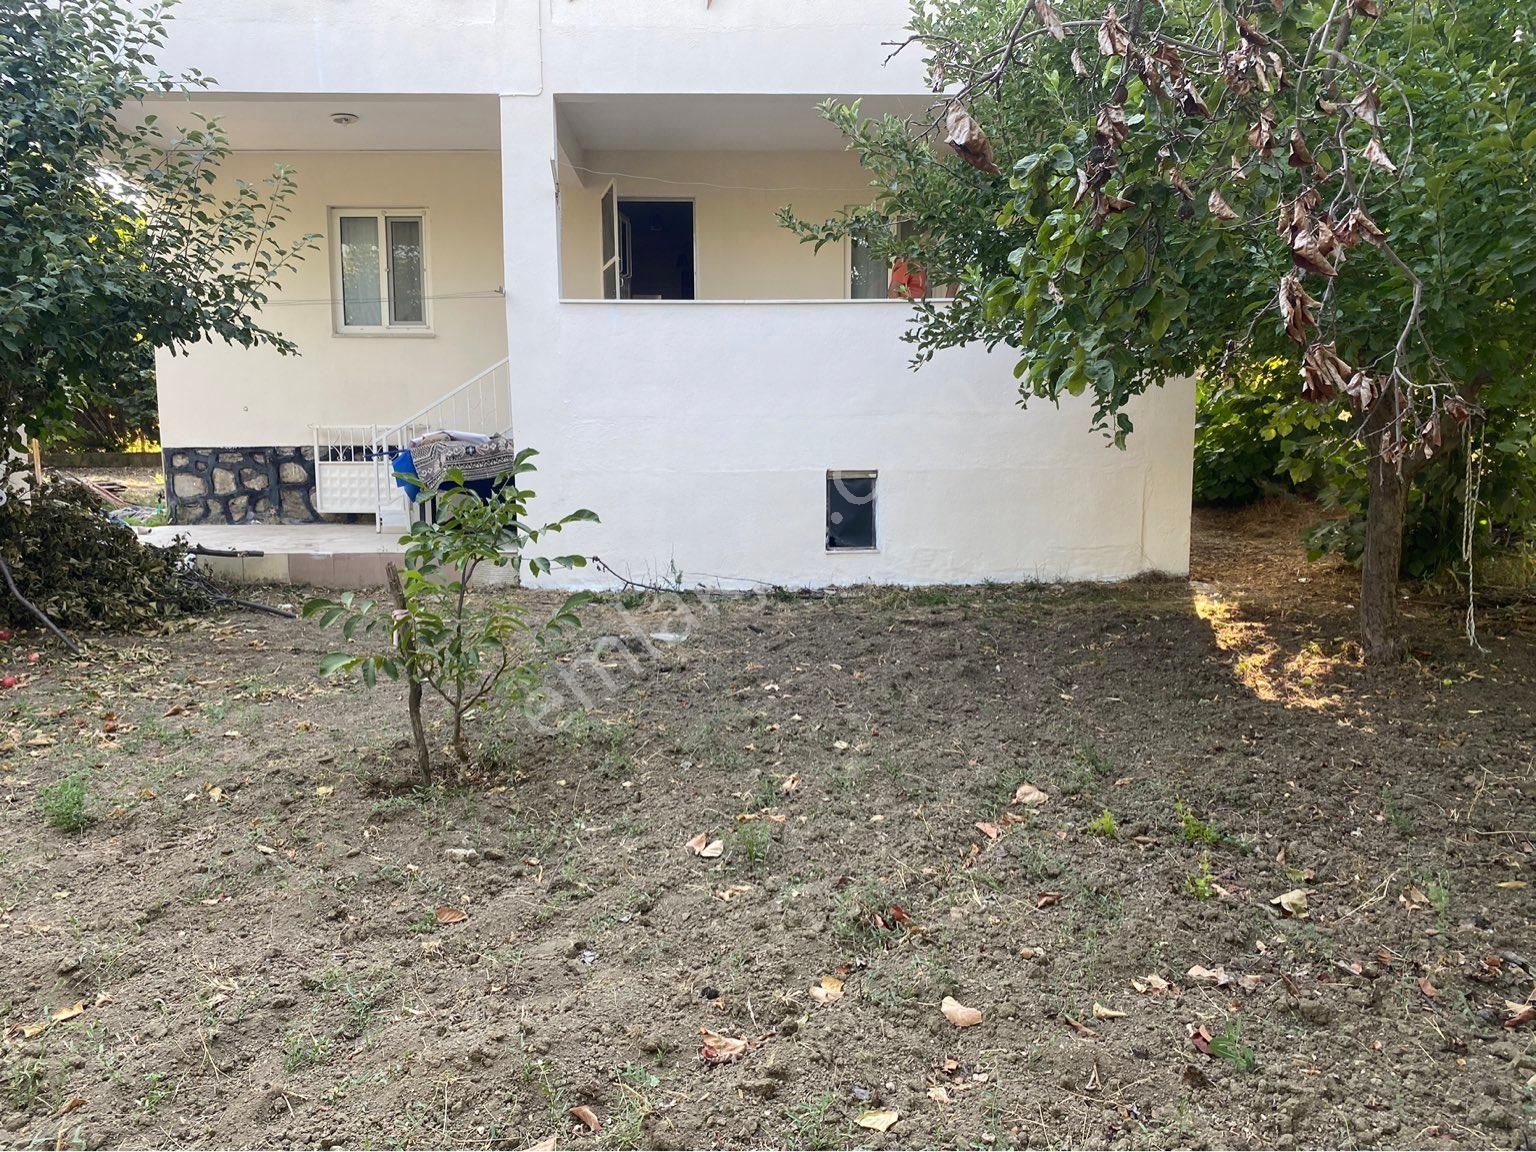 Çameli Gürsu Satılık Daire Çameli gürsu mahallesi satılık 2 katlı müstakil ev